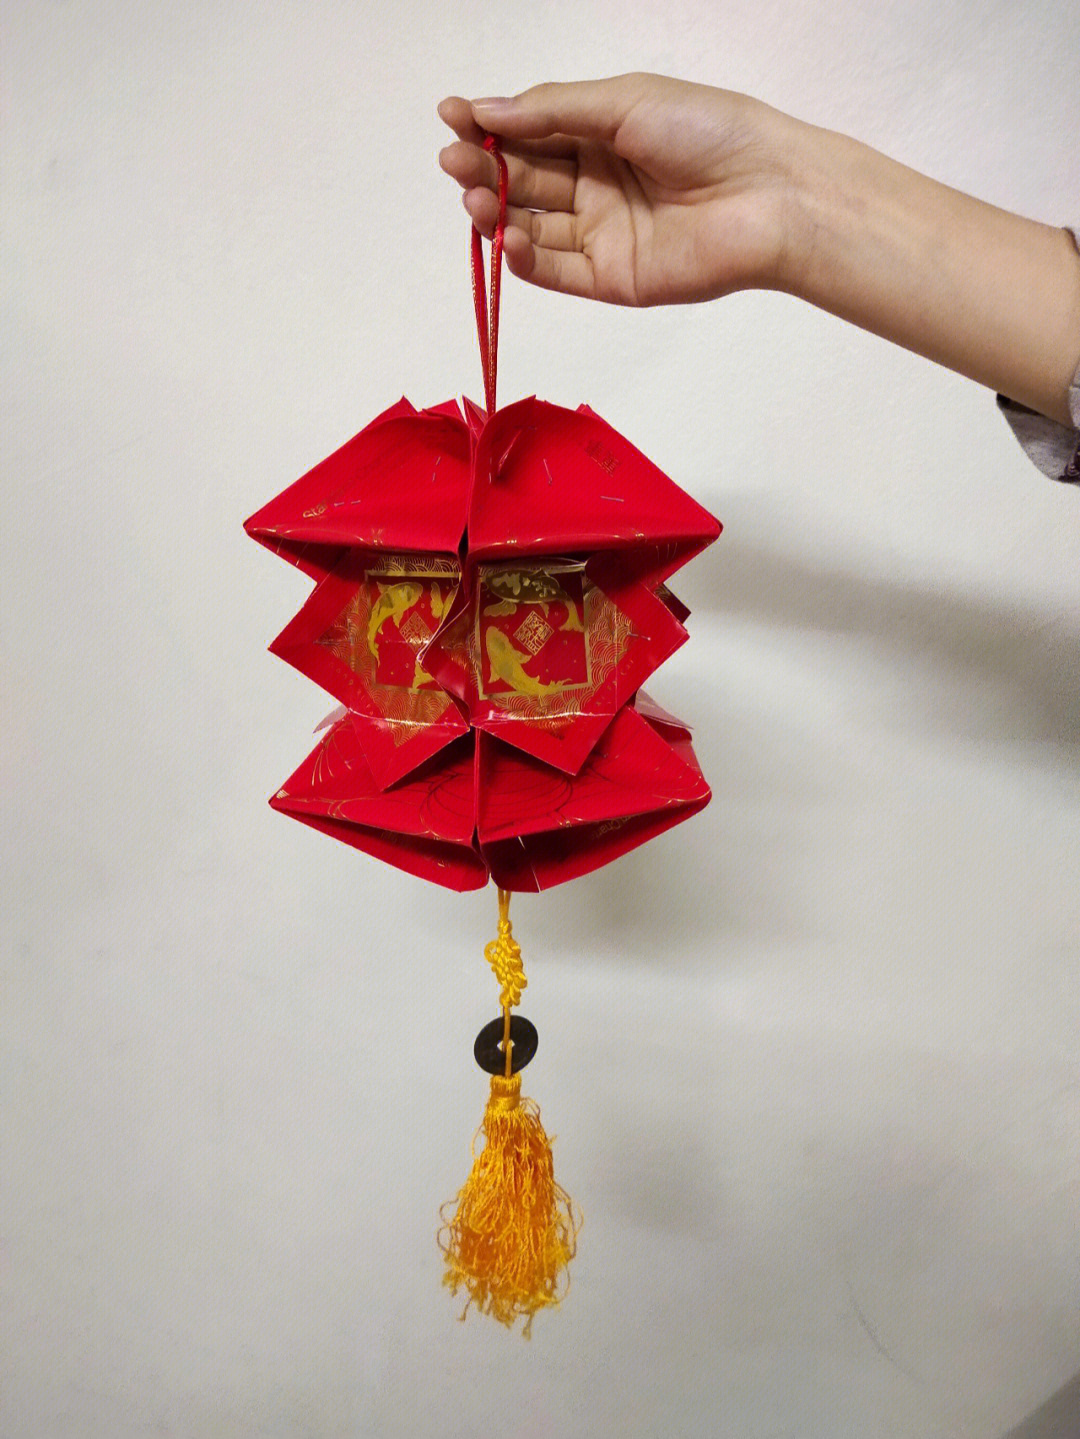 用筷子和红包做灯笼图片